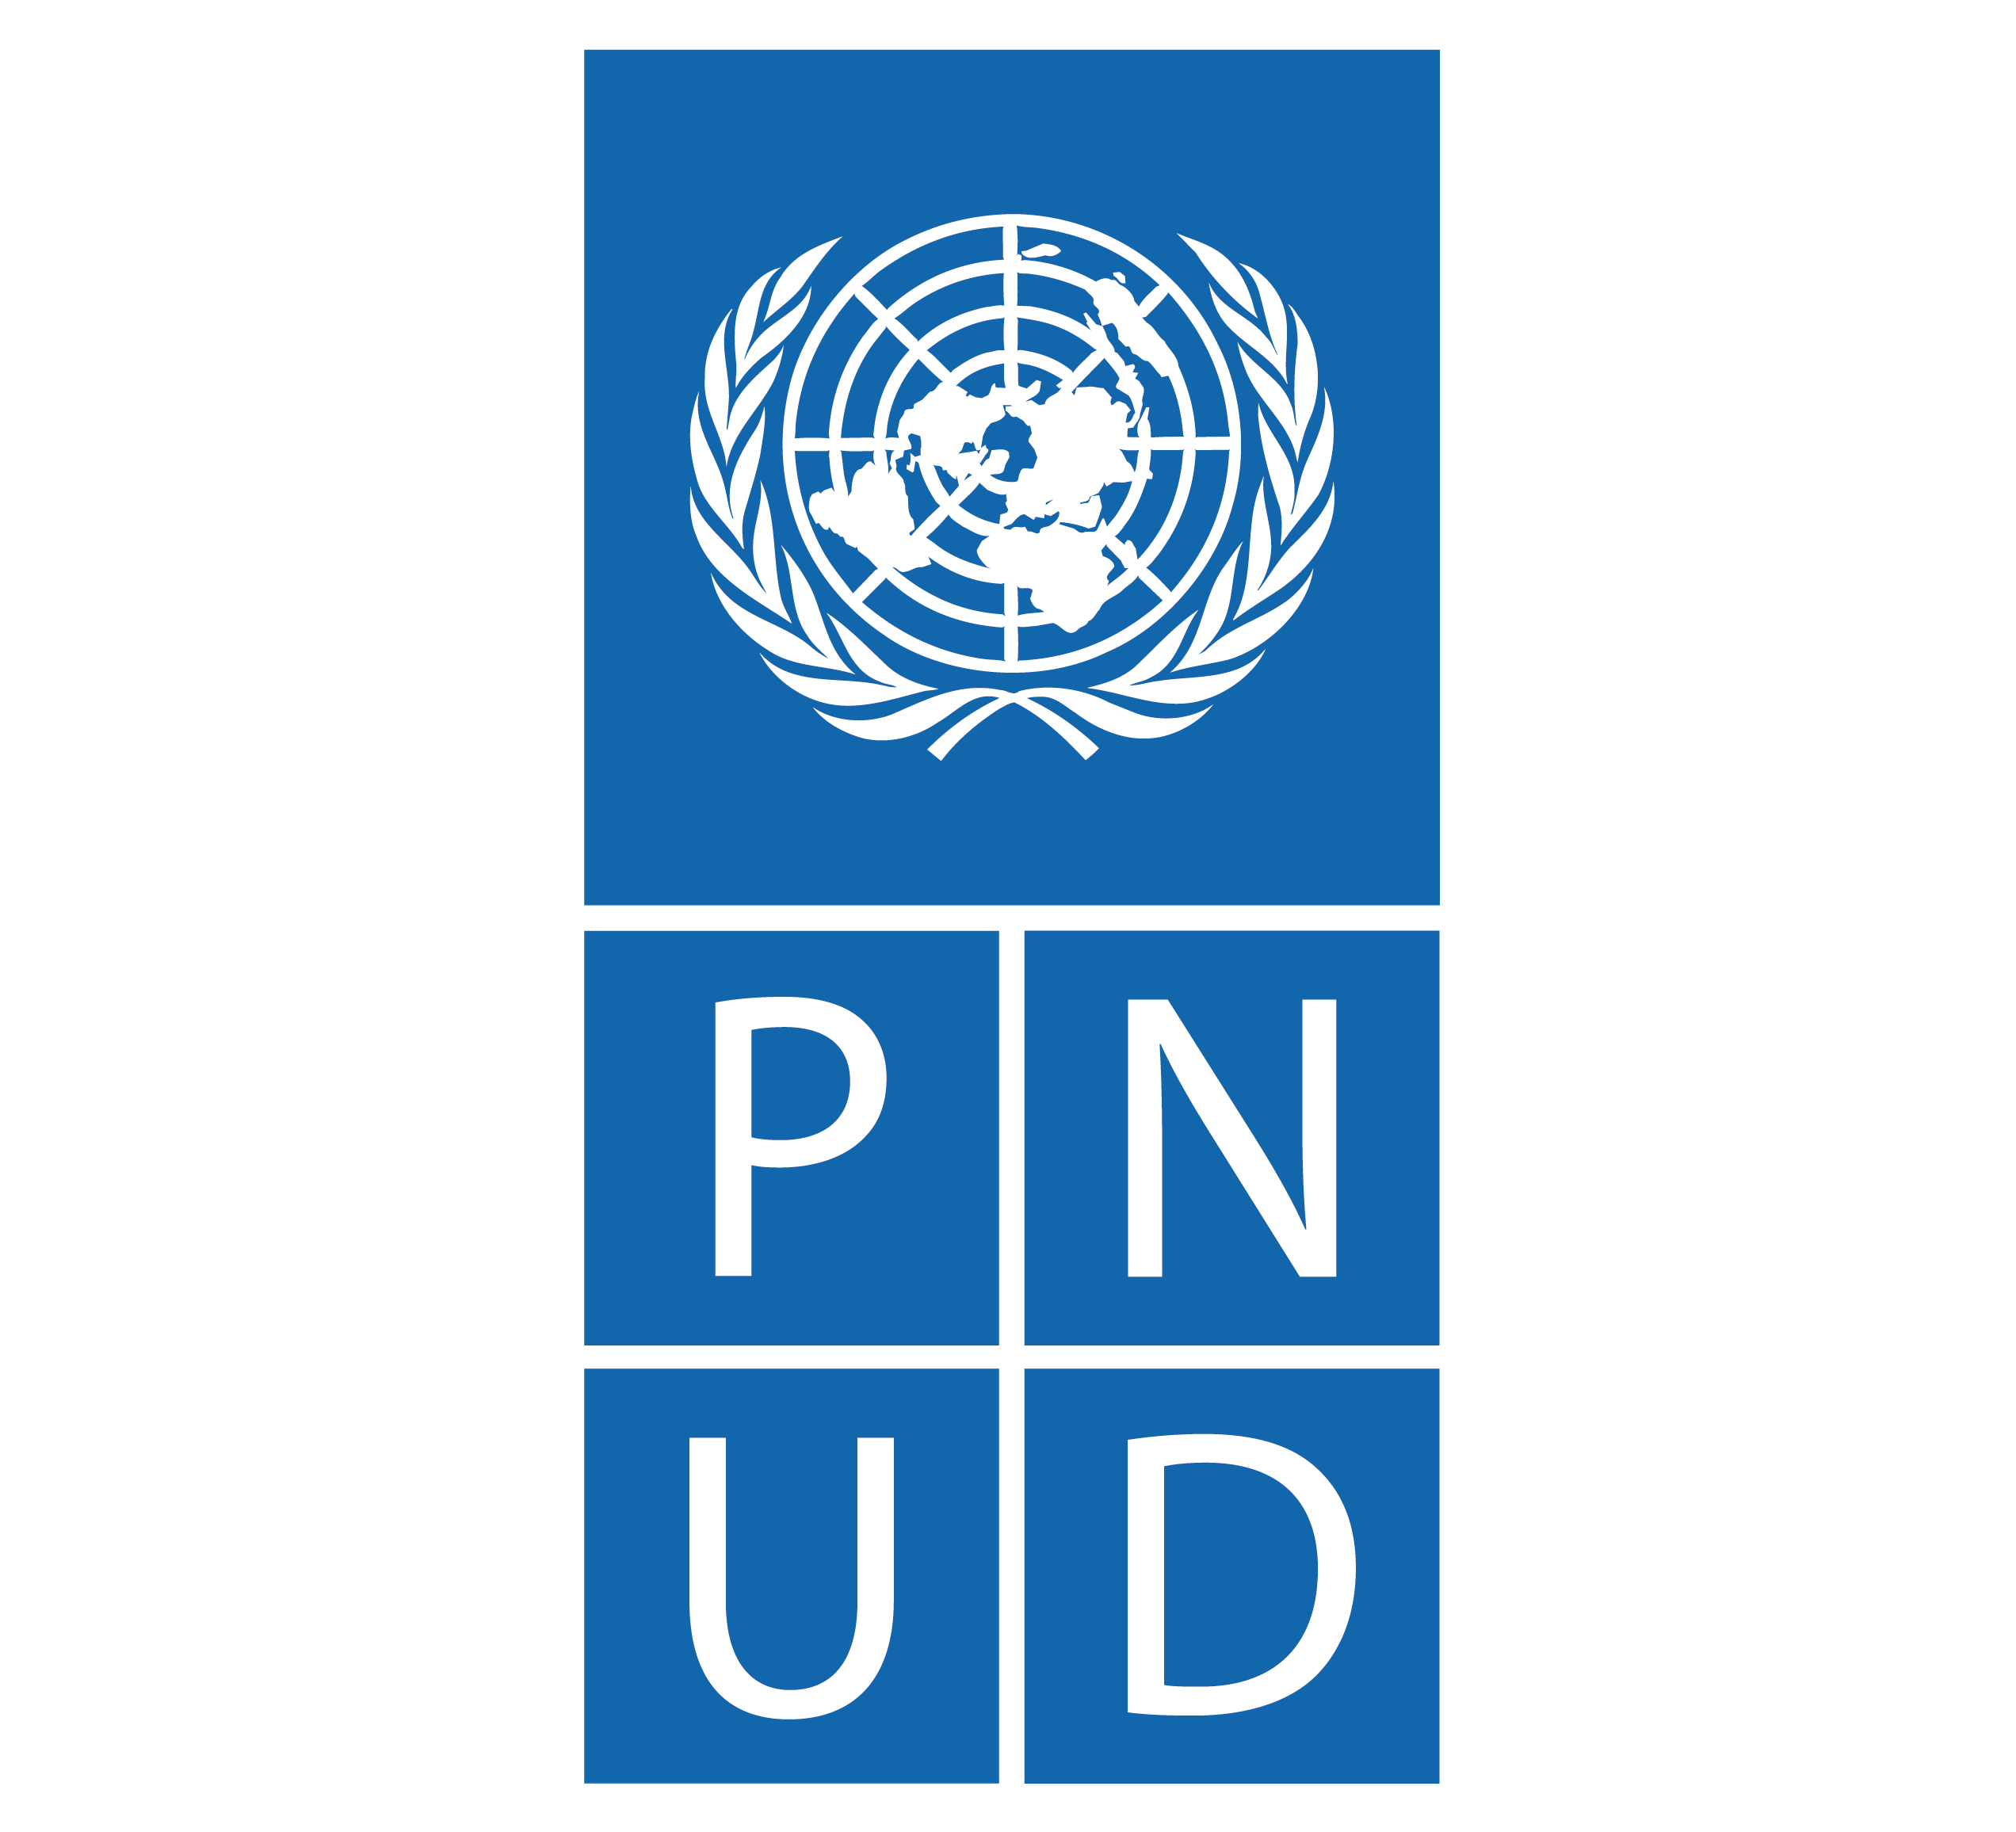 PNUD logo